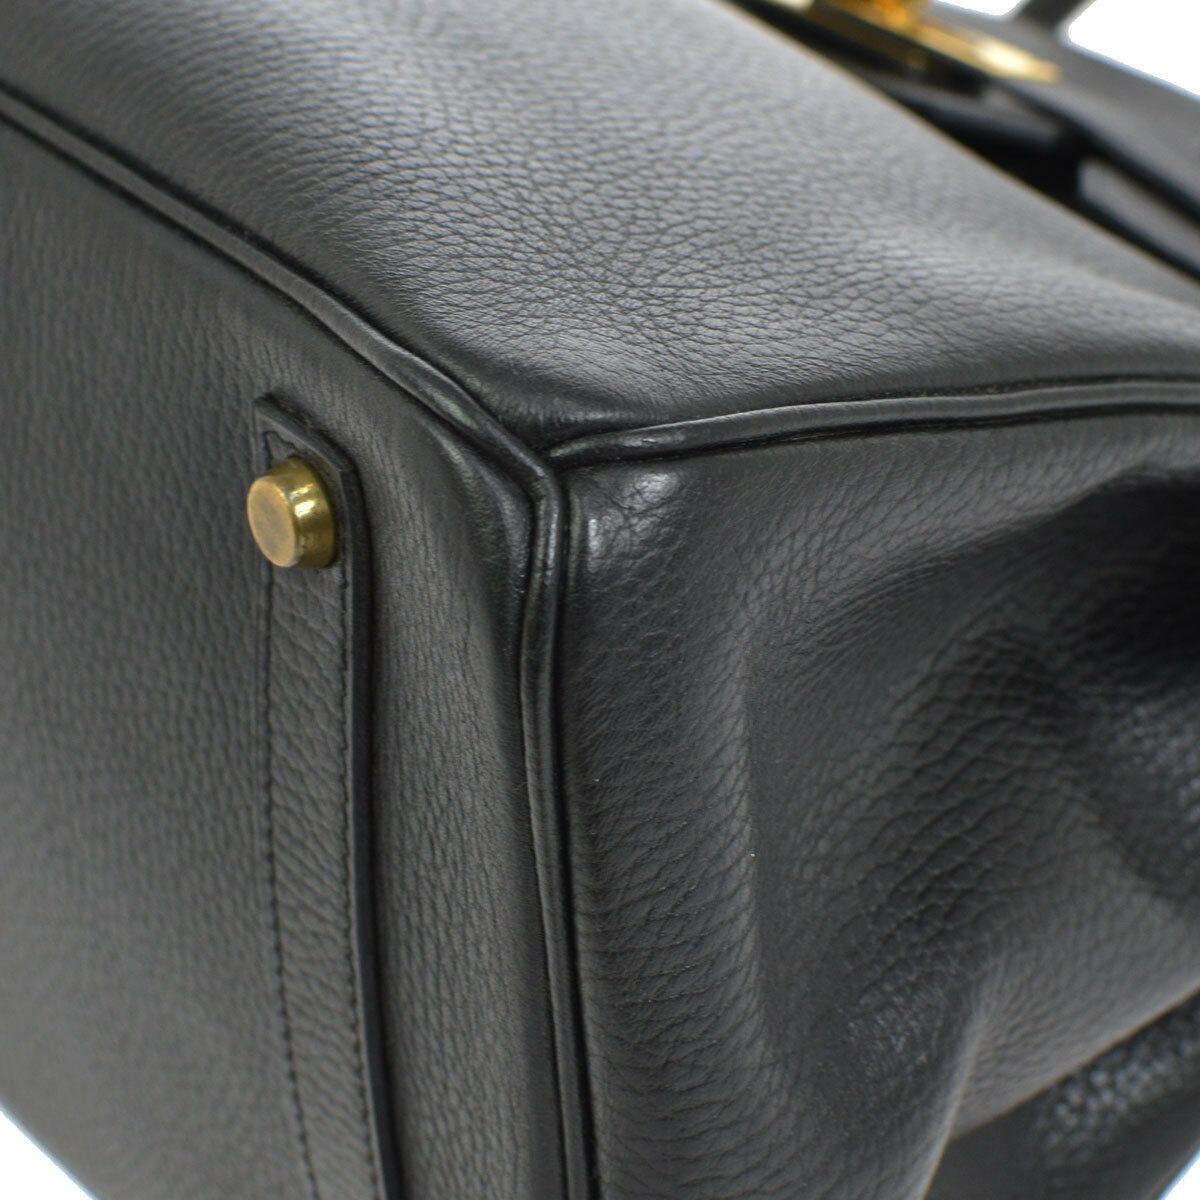 Hermes Birkin 35 Black Leather Gold Top Handle Satchel Travel Bag 2